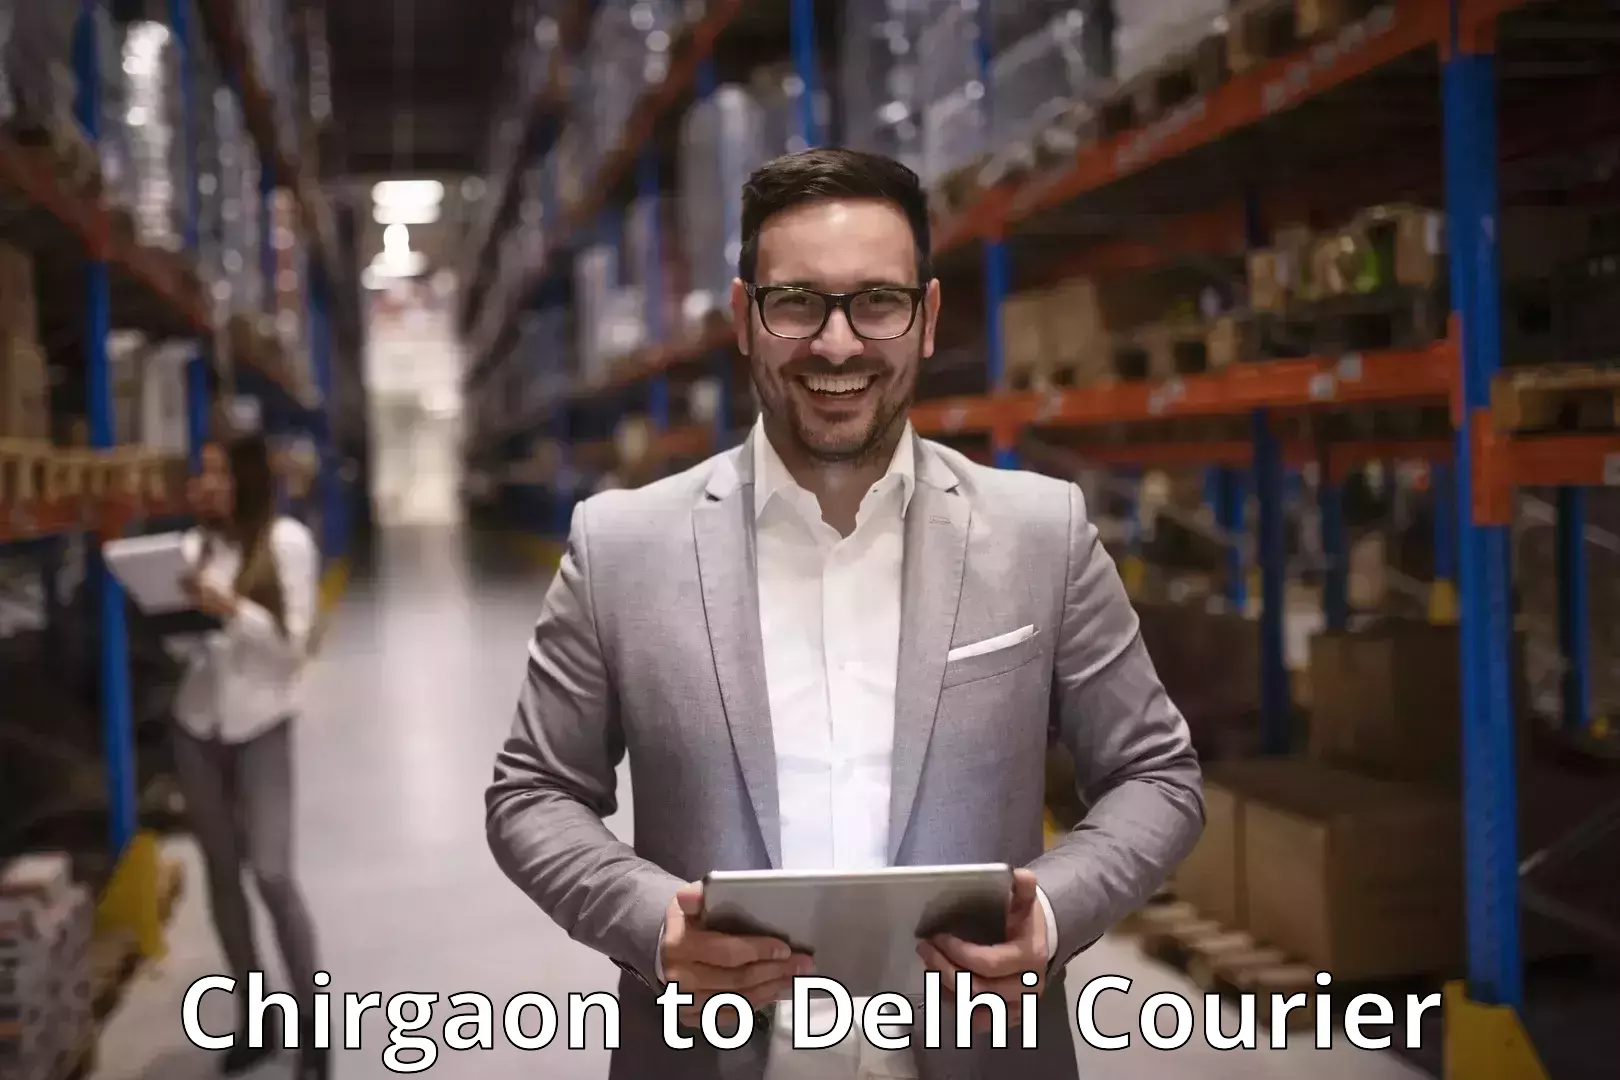 Courier service comparison Chirgaon to Jamia Millia Islamia New Delhi